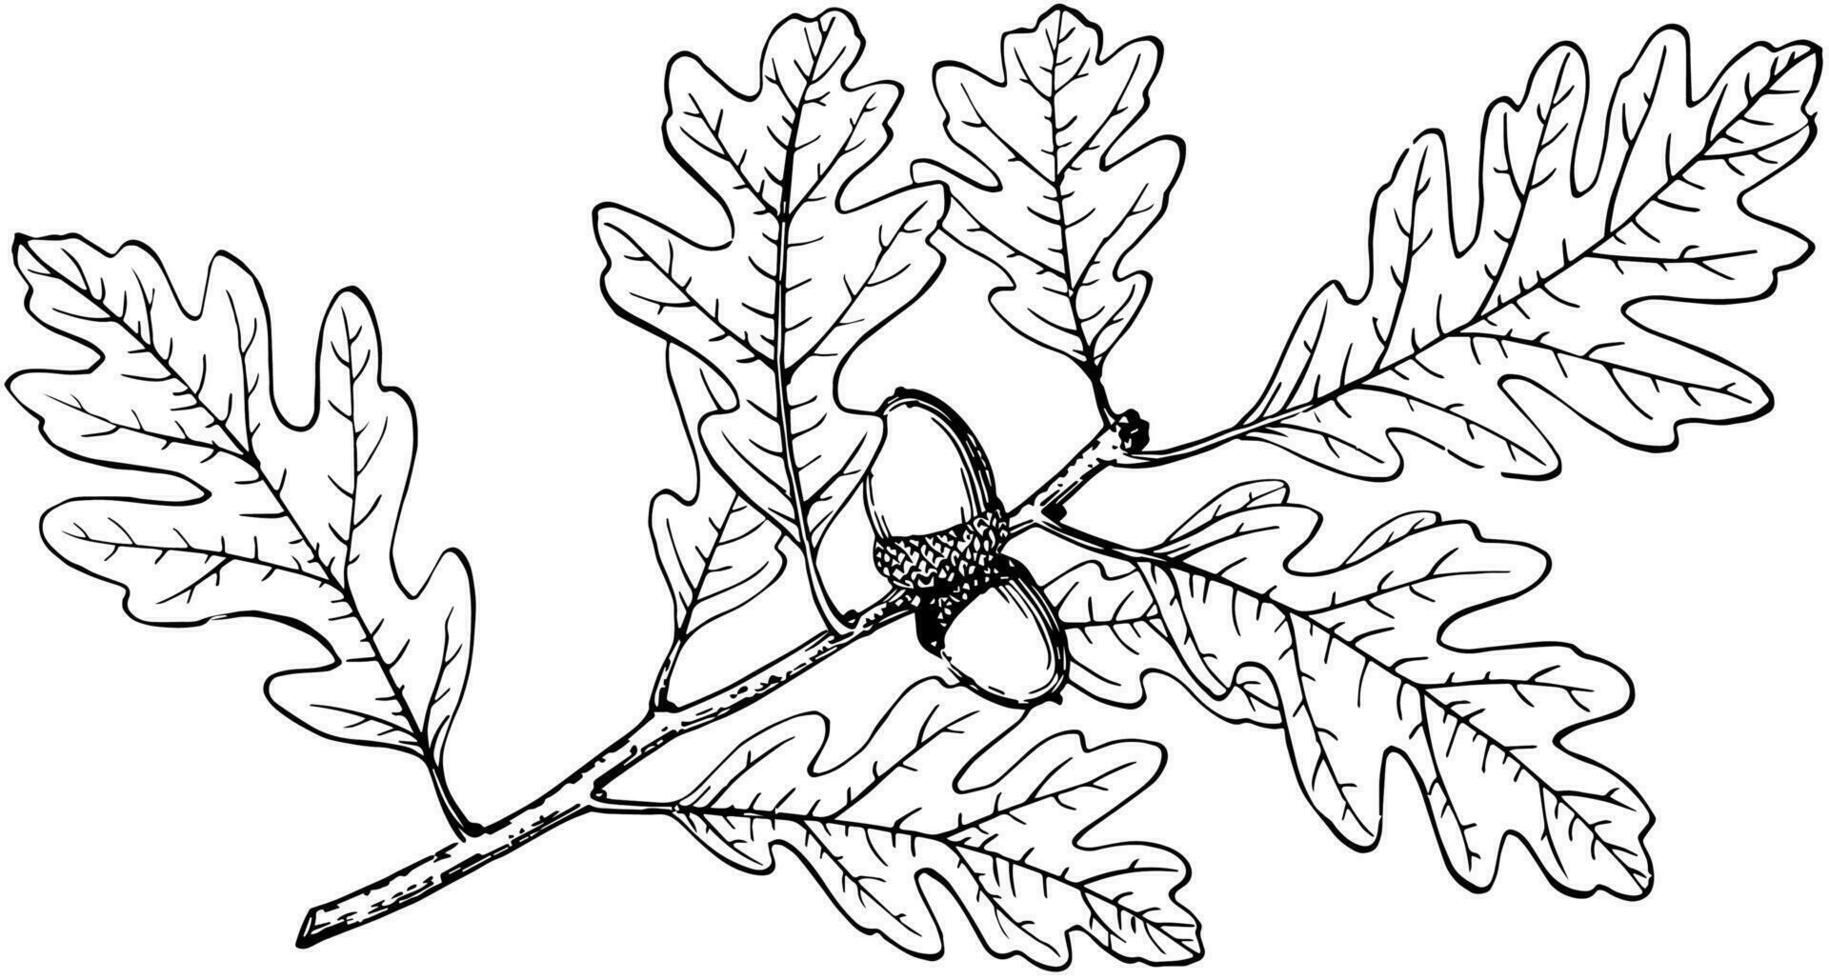 Branch of Gambel Oak vintage illustration. vector